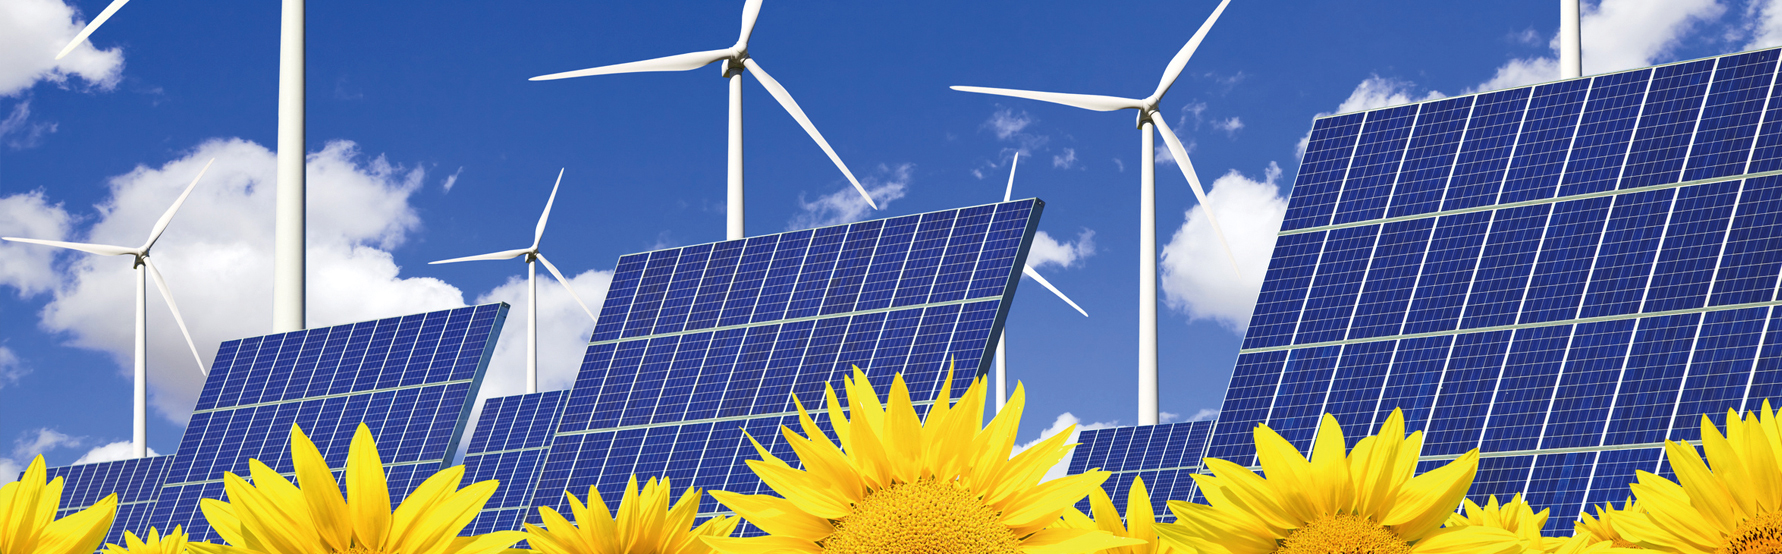 Imagen de paneles solares y girasoles para representar las energías renovables